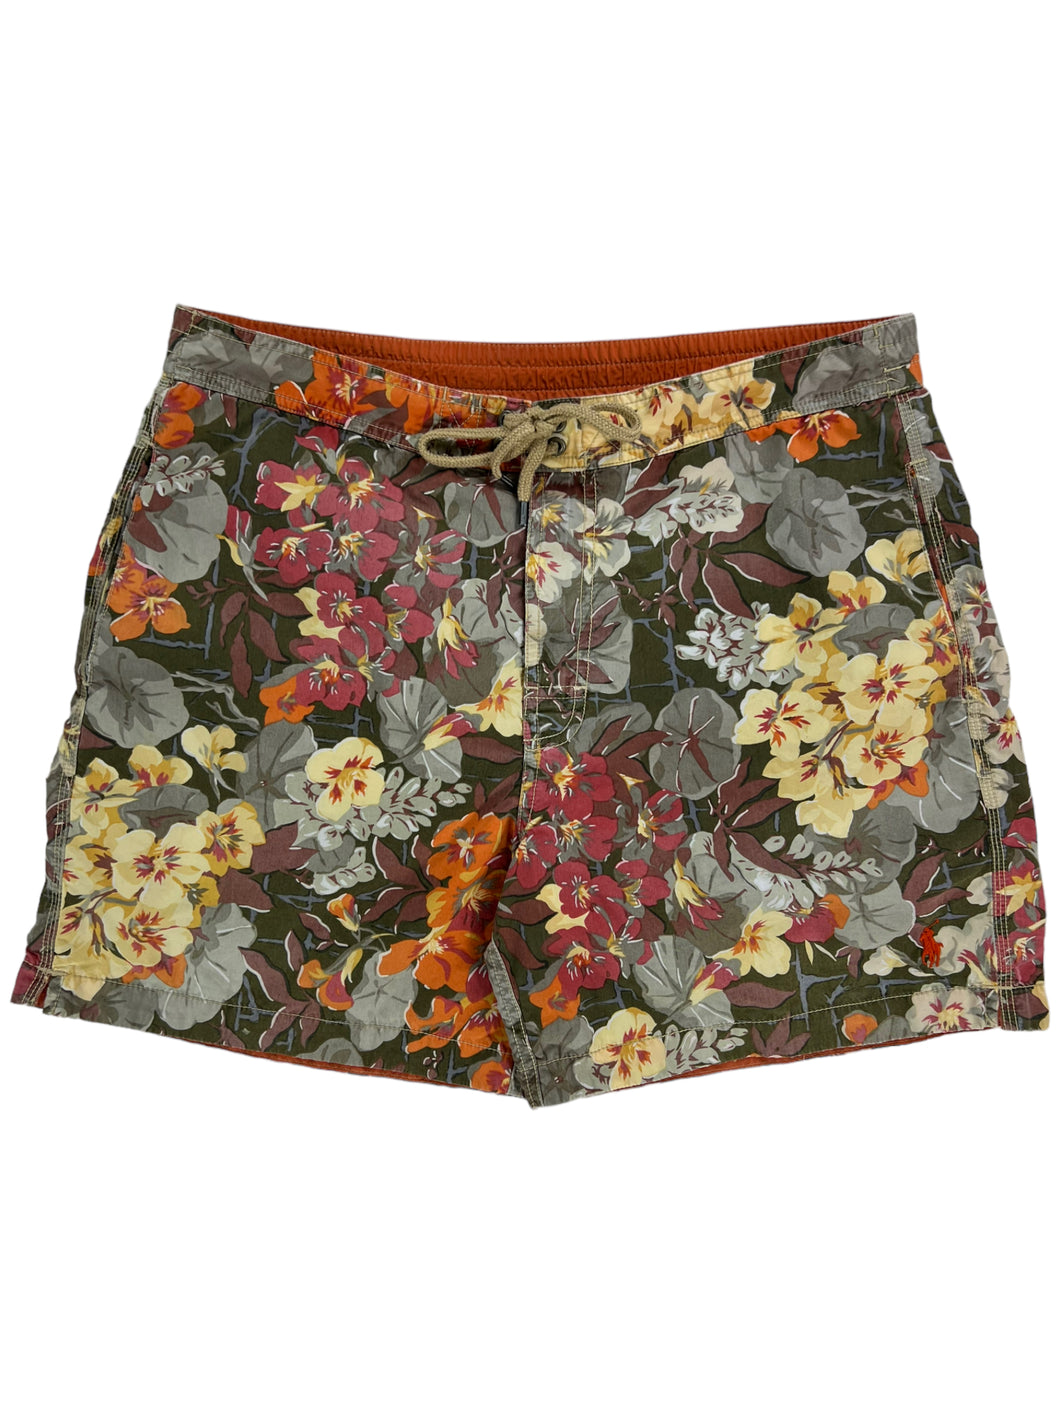 Vintage 2000s Polo Ralph Lauren floral all over print AOP swim trunks shorts (M/L)